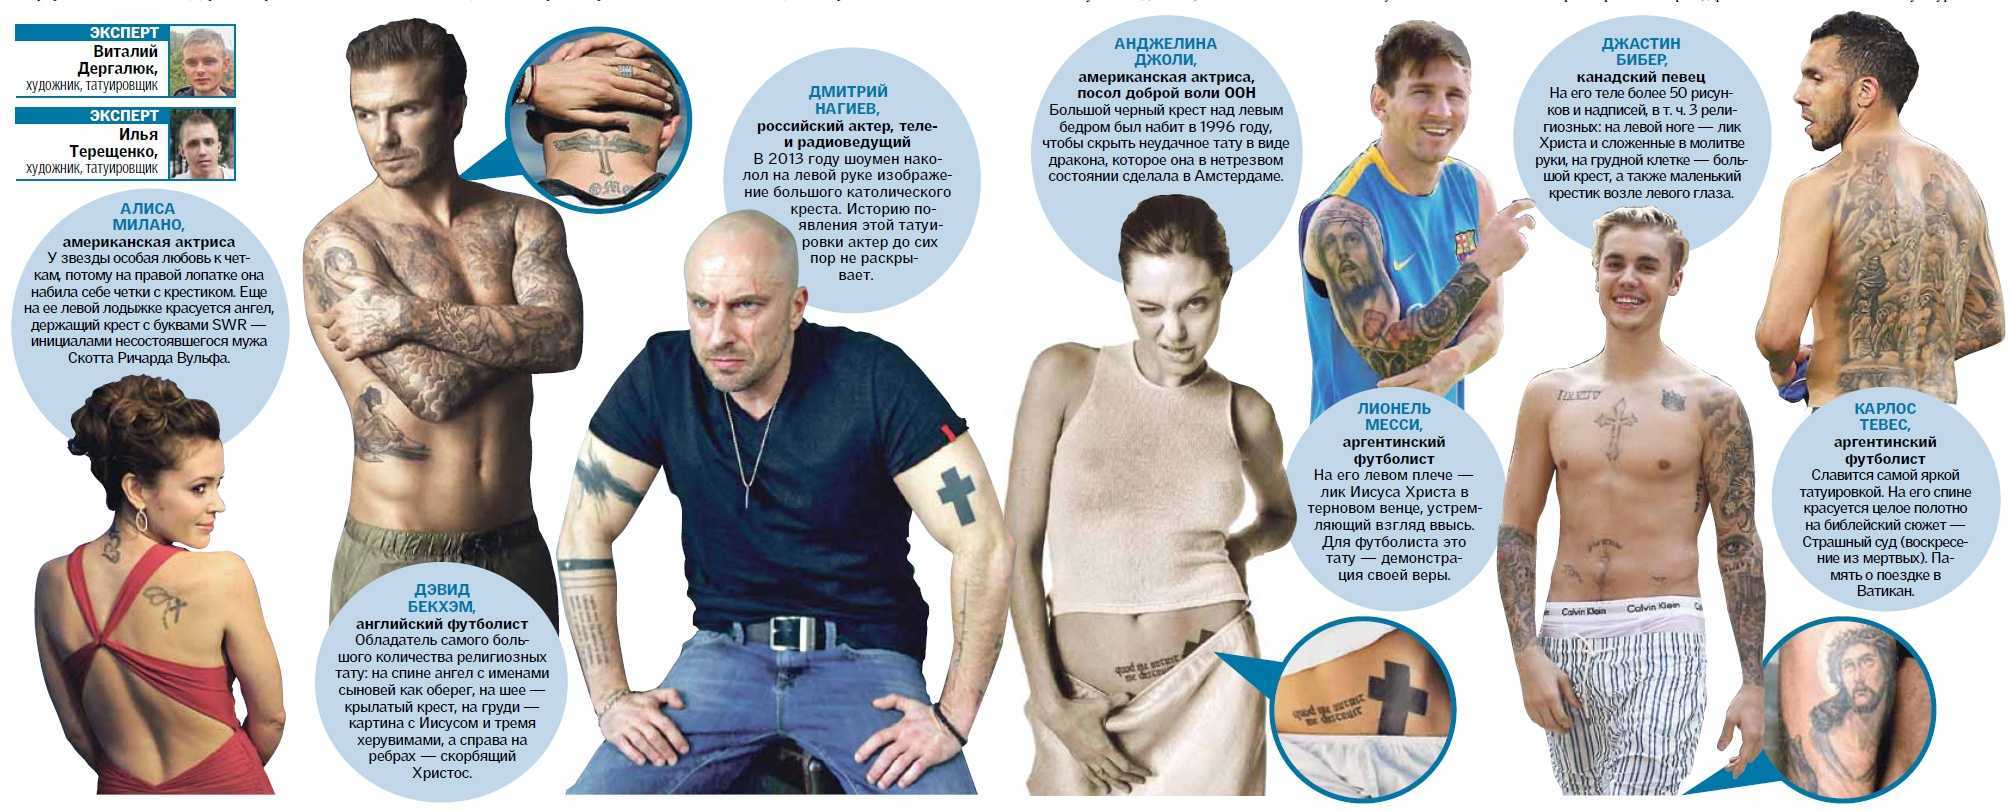 Киркоров татуировки на теле